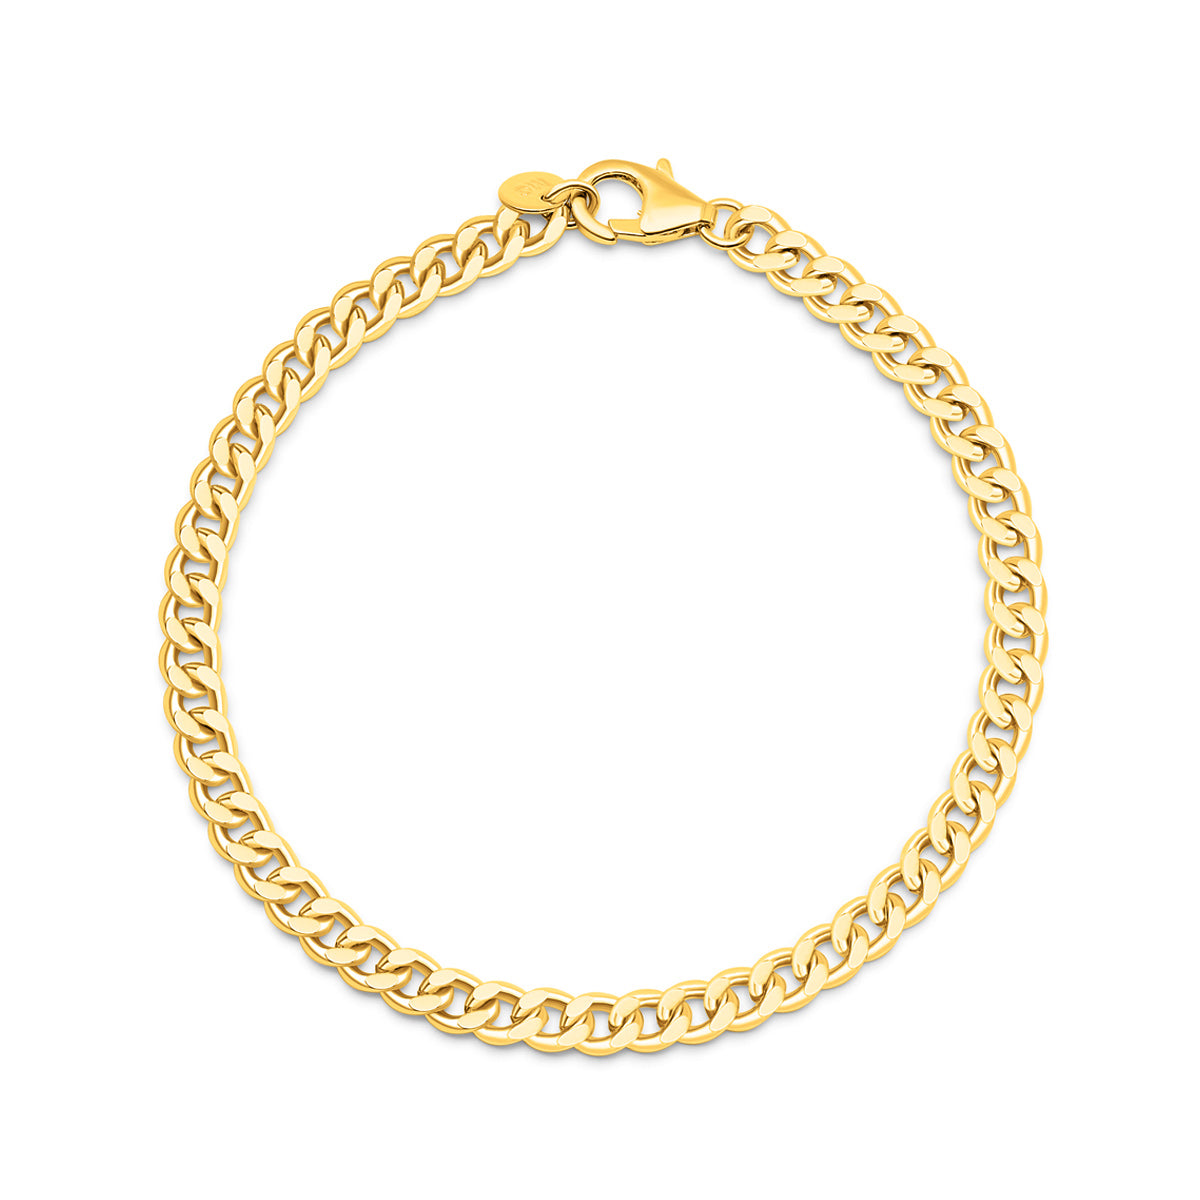 Unique gold plated chain bracelet